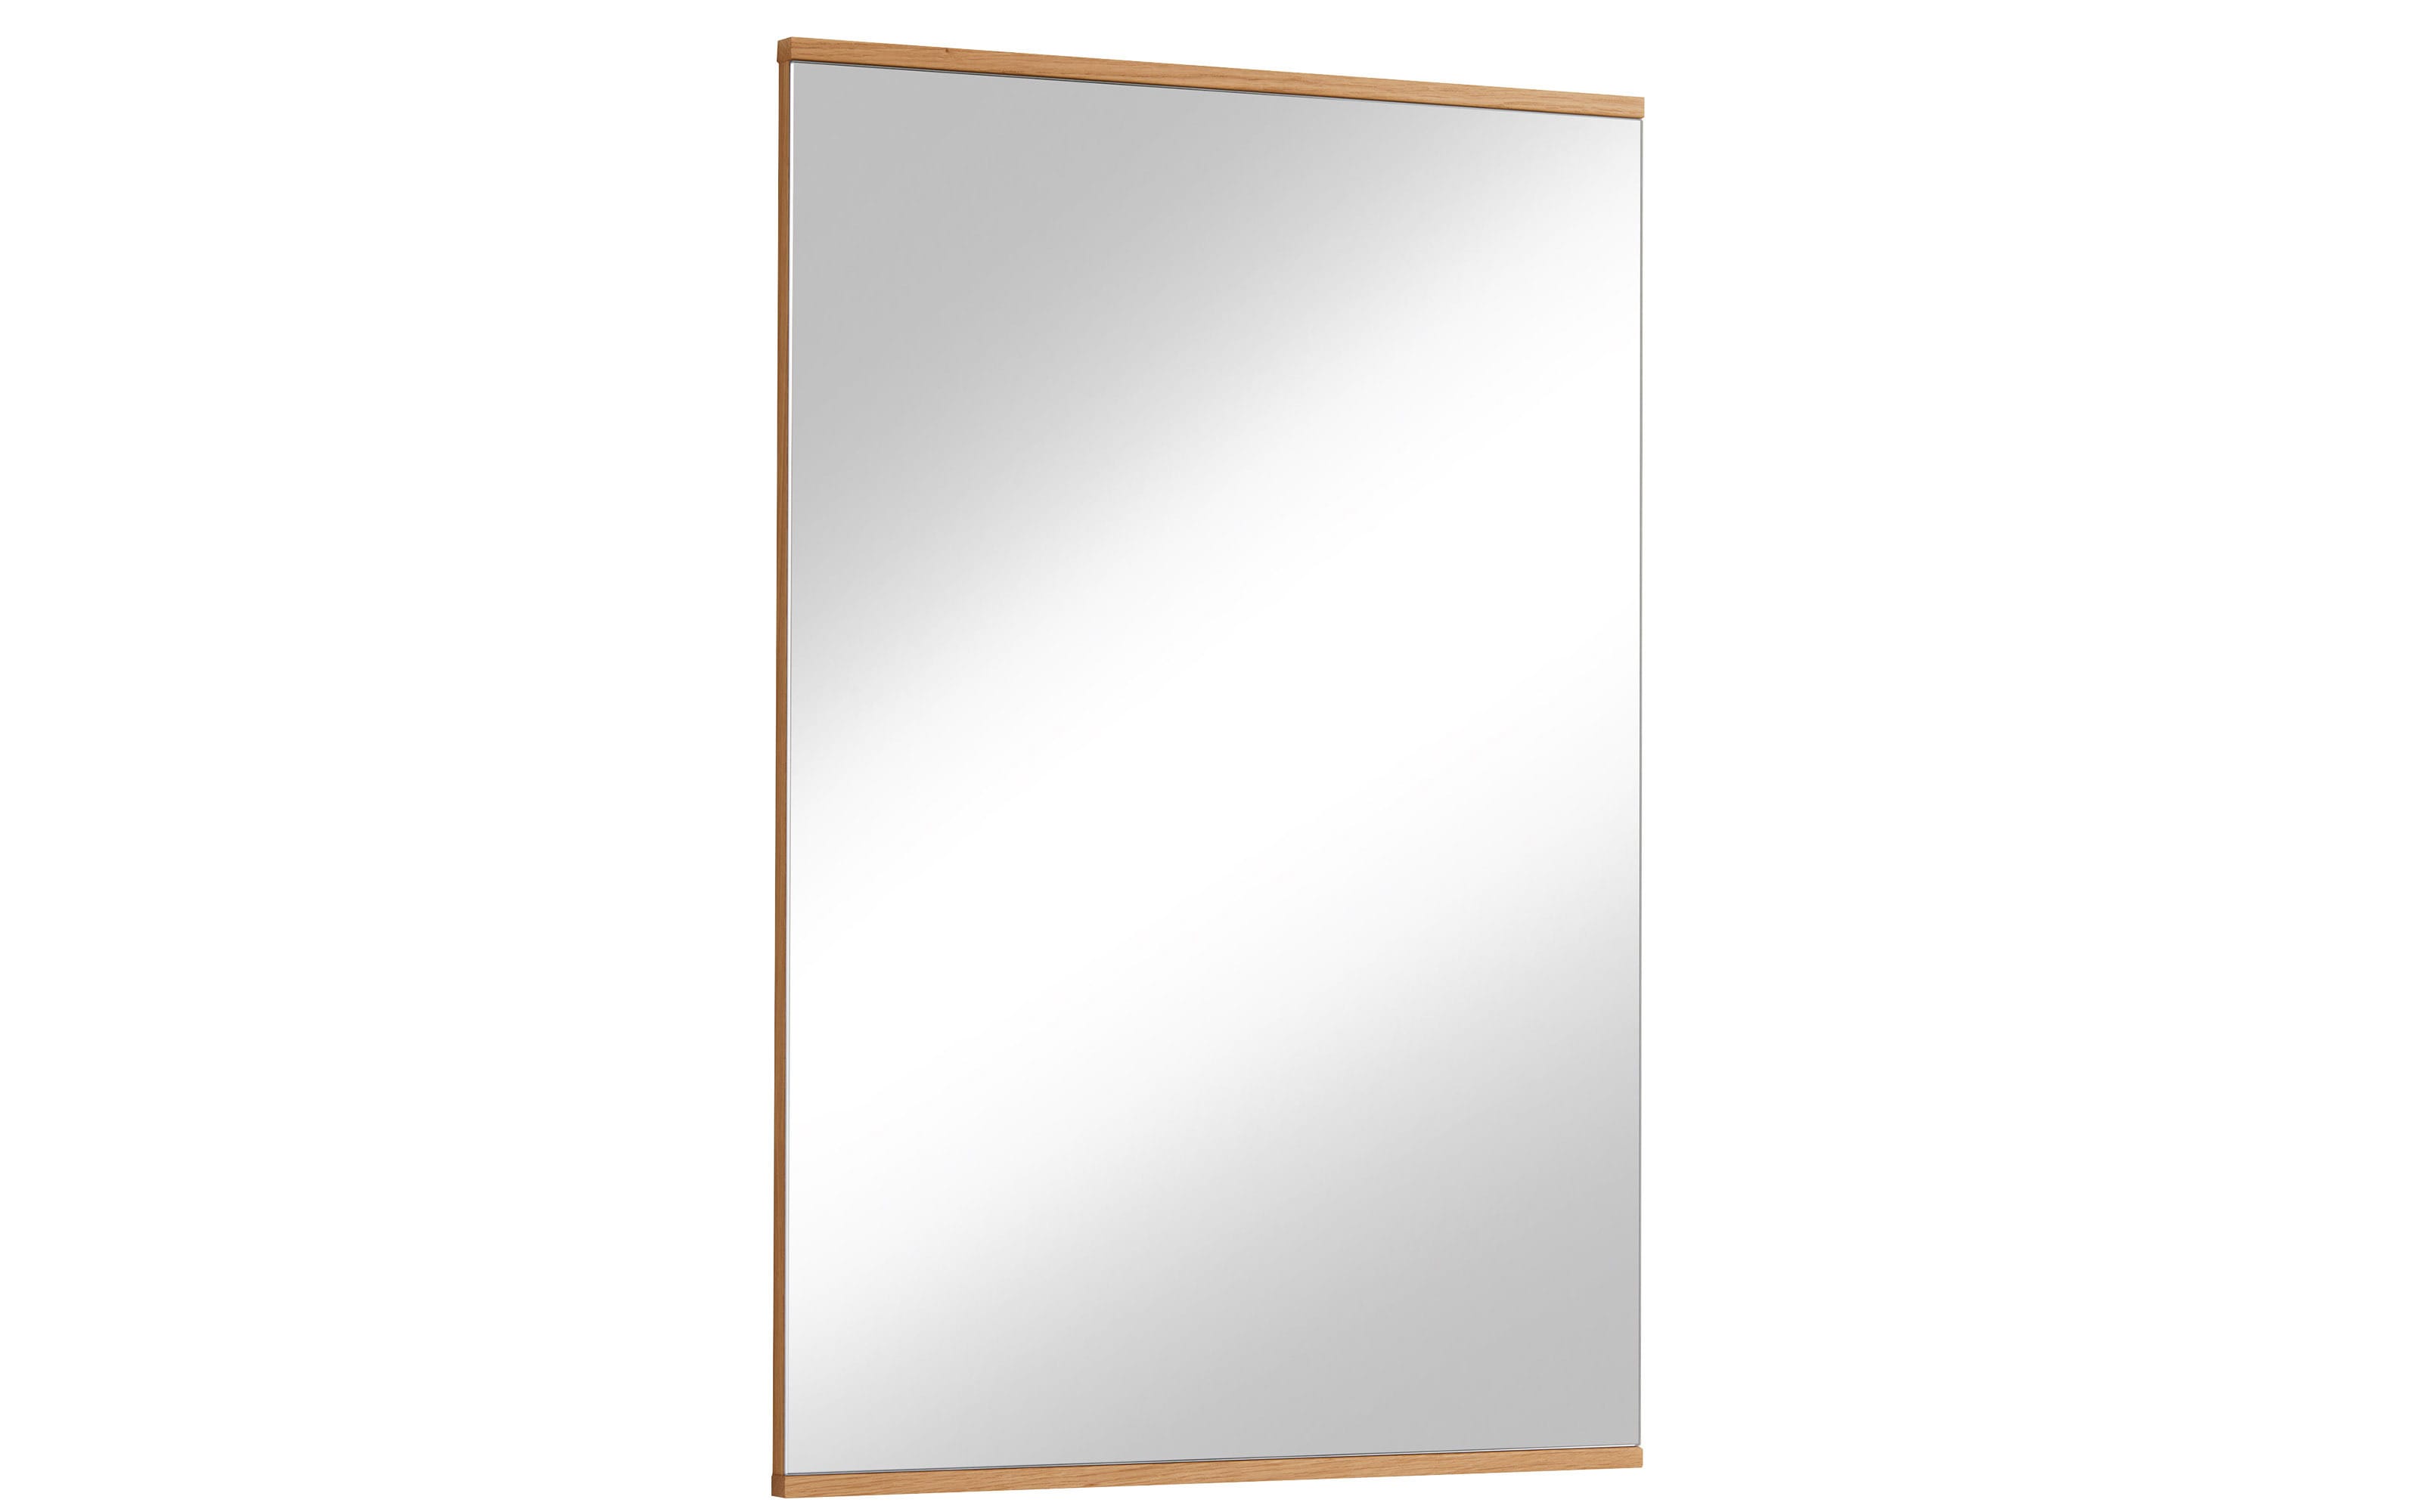 Spiegel Loveno II aus Eiche Bianco, 56 x 82 cm